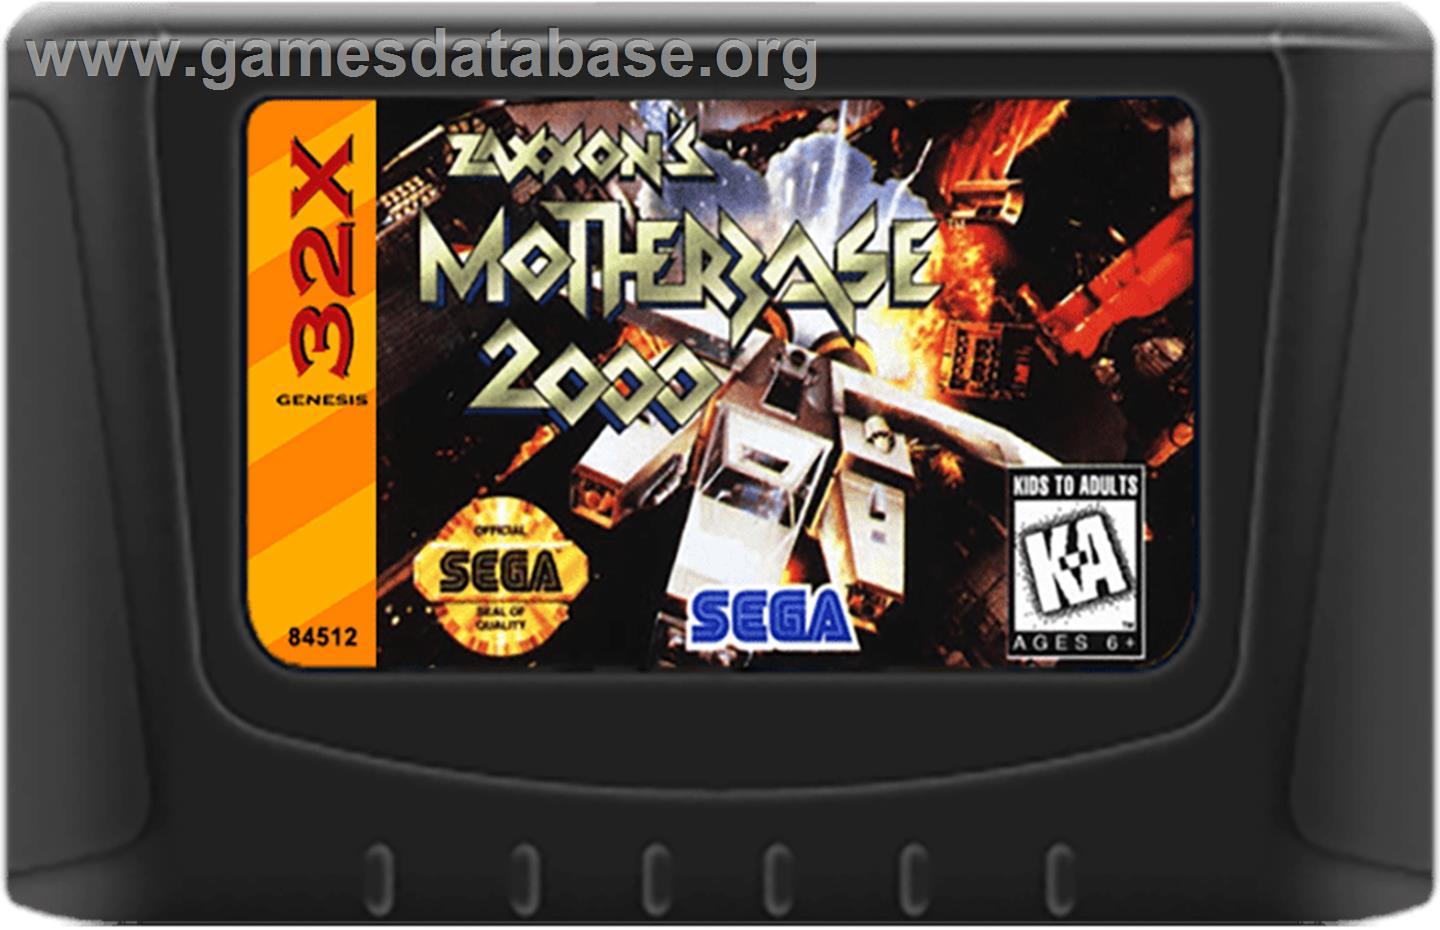 Zaxxon's Motherbase 2000 - Sega 32X - Artwork - Cartridge